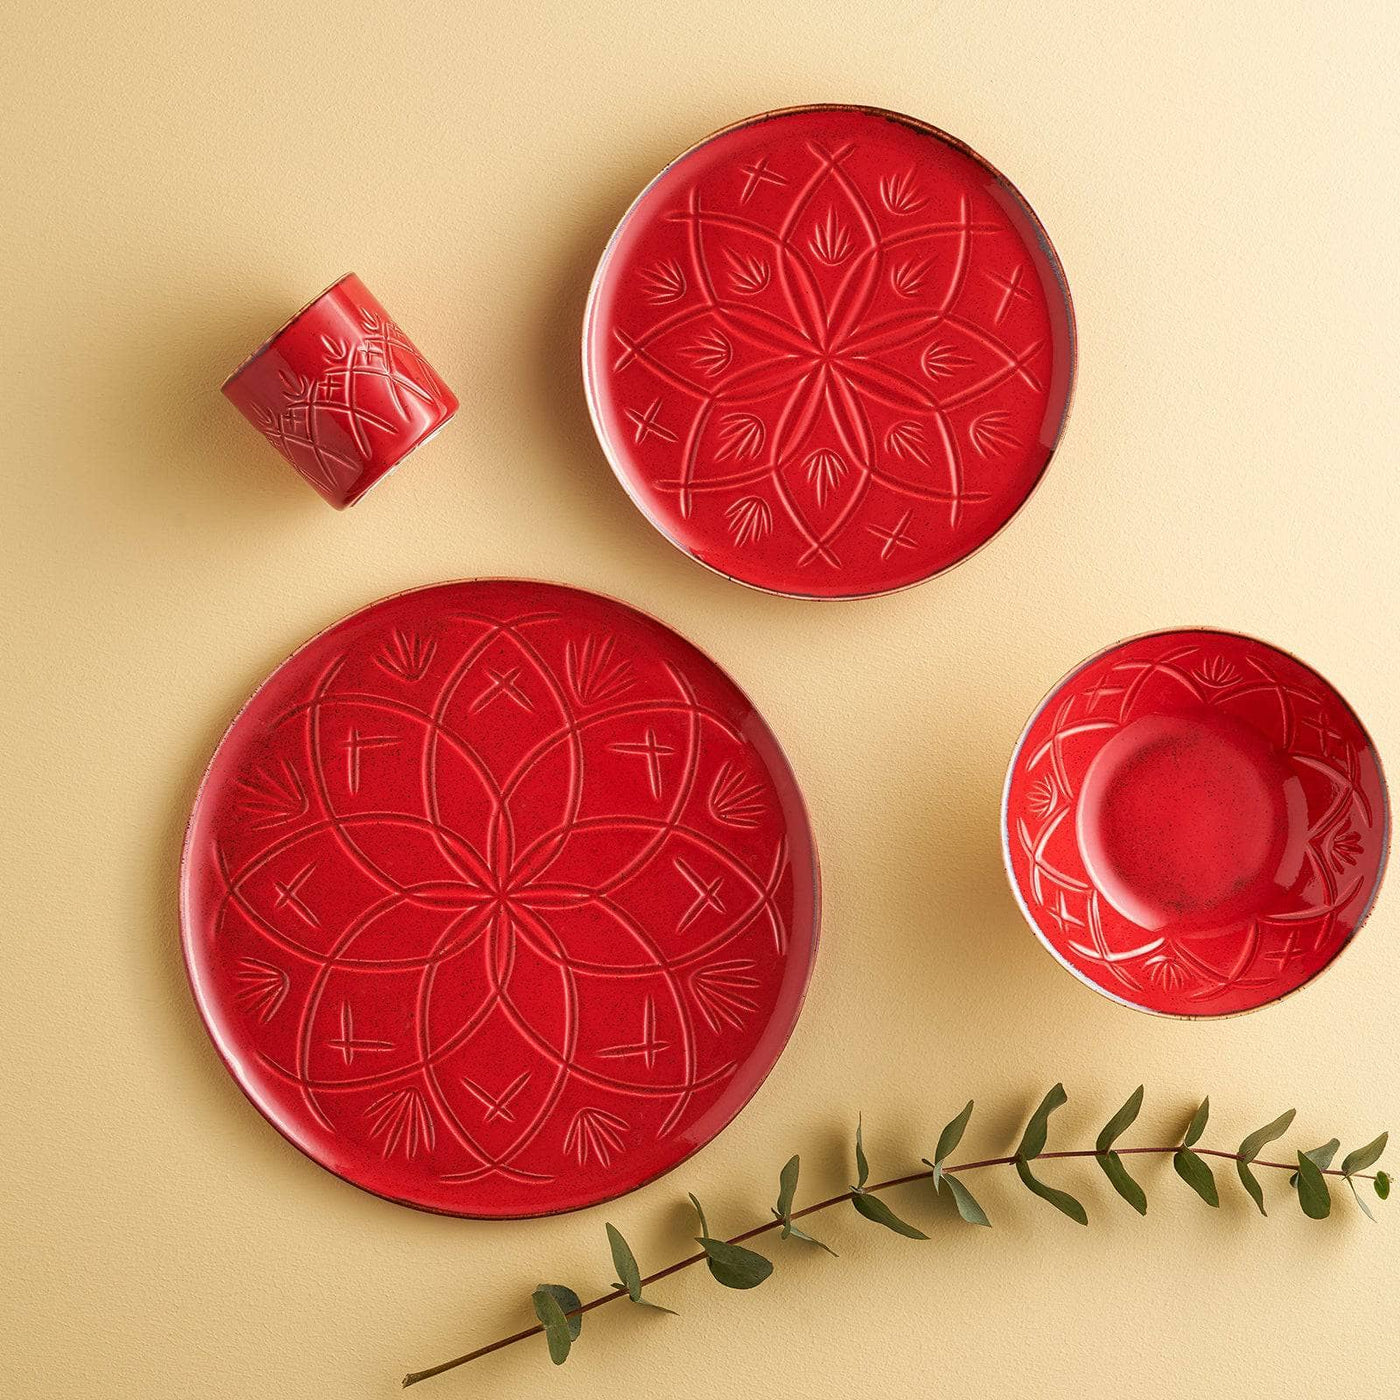 Christina Set of 6 Flat Plates, Red, 32 cm Plates sazy.com